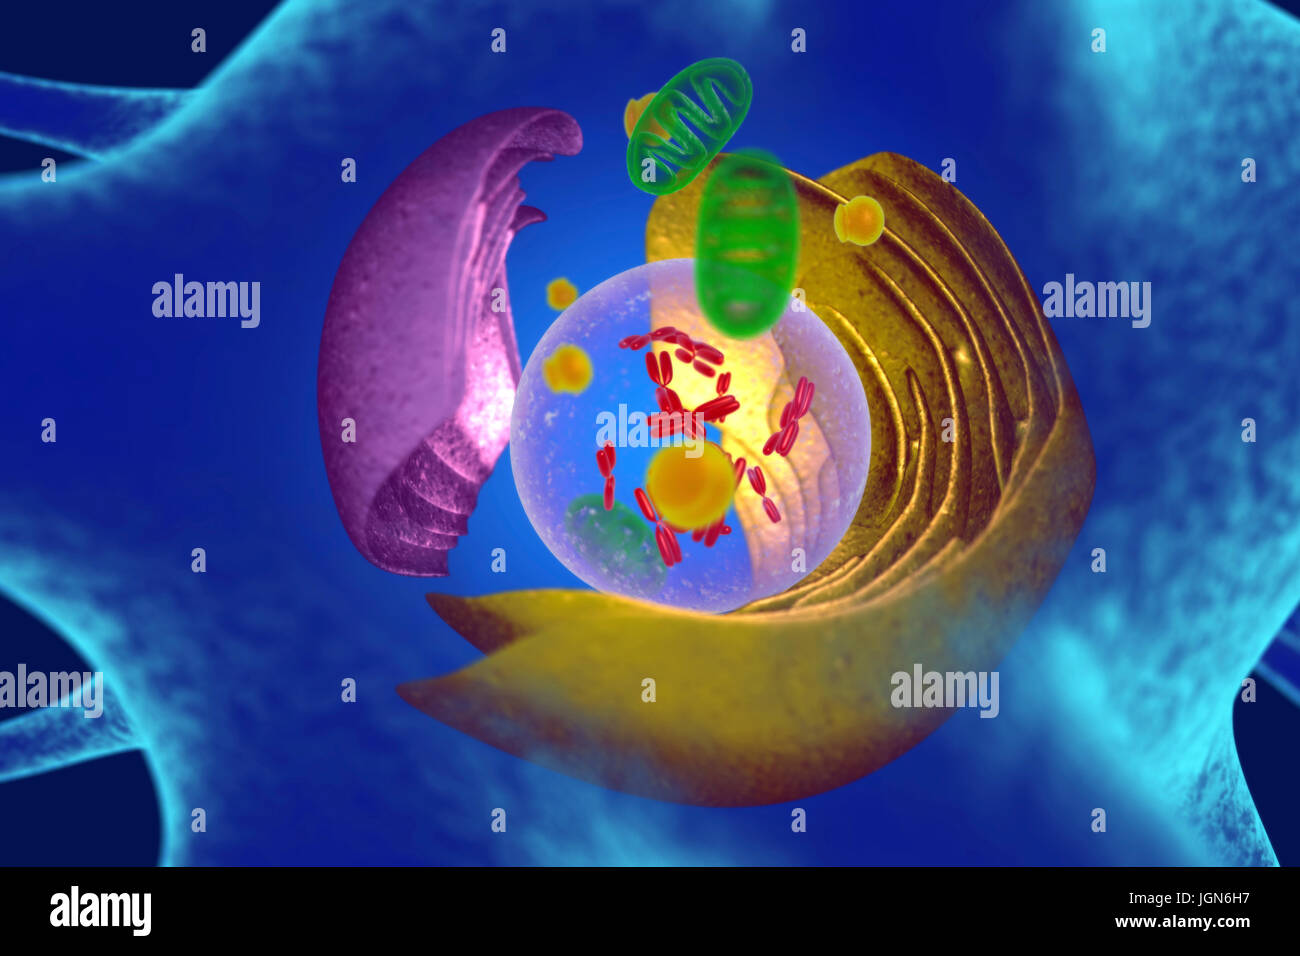 Illustrazione di organelli in una cellula animale. Al centro è il nucleo (trasparente), che contiene i cromosomi (rosso) che trattengono la cellula di informazioni genetiche. Il reticolo endoplasmatico (ER, rosa) è il sito di sintesi lipidica e la produzione di le proteine legate alla membrana. Il corpo del Golgi (giallo) modifica pacchetti e proteine. Mitocondri (verdi) fornire la cella con energia. Foto Stock